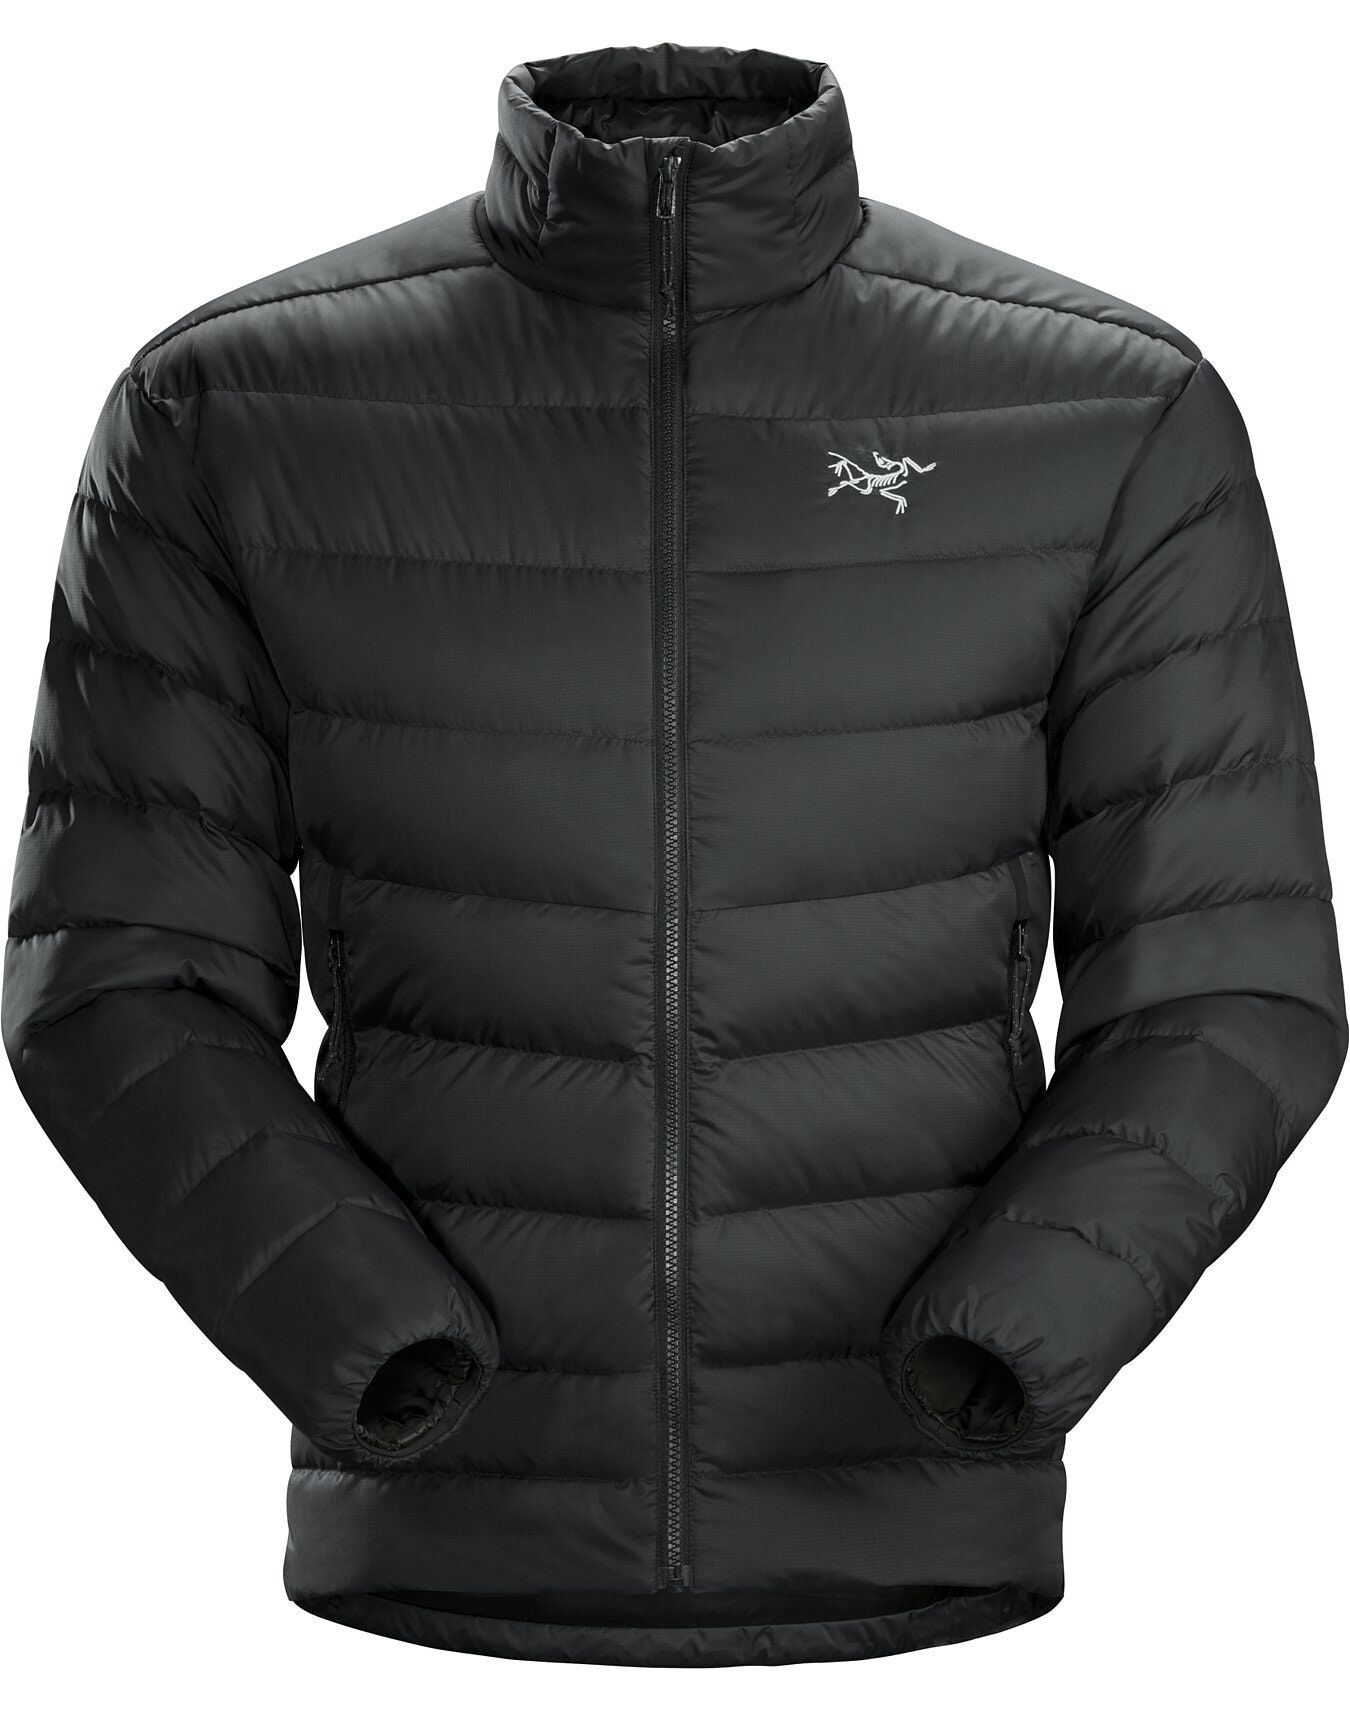 Arc'teryx Thorium AR Jacket - Chaqueta de plumas - Hombre